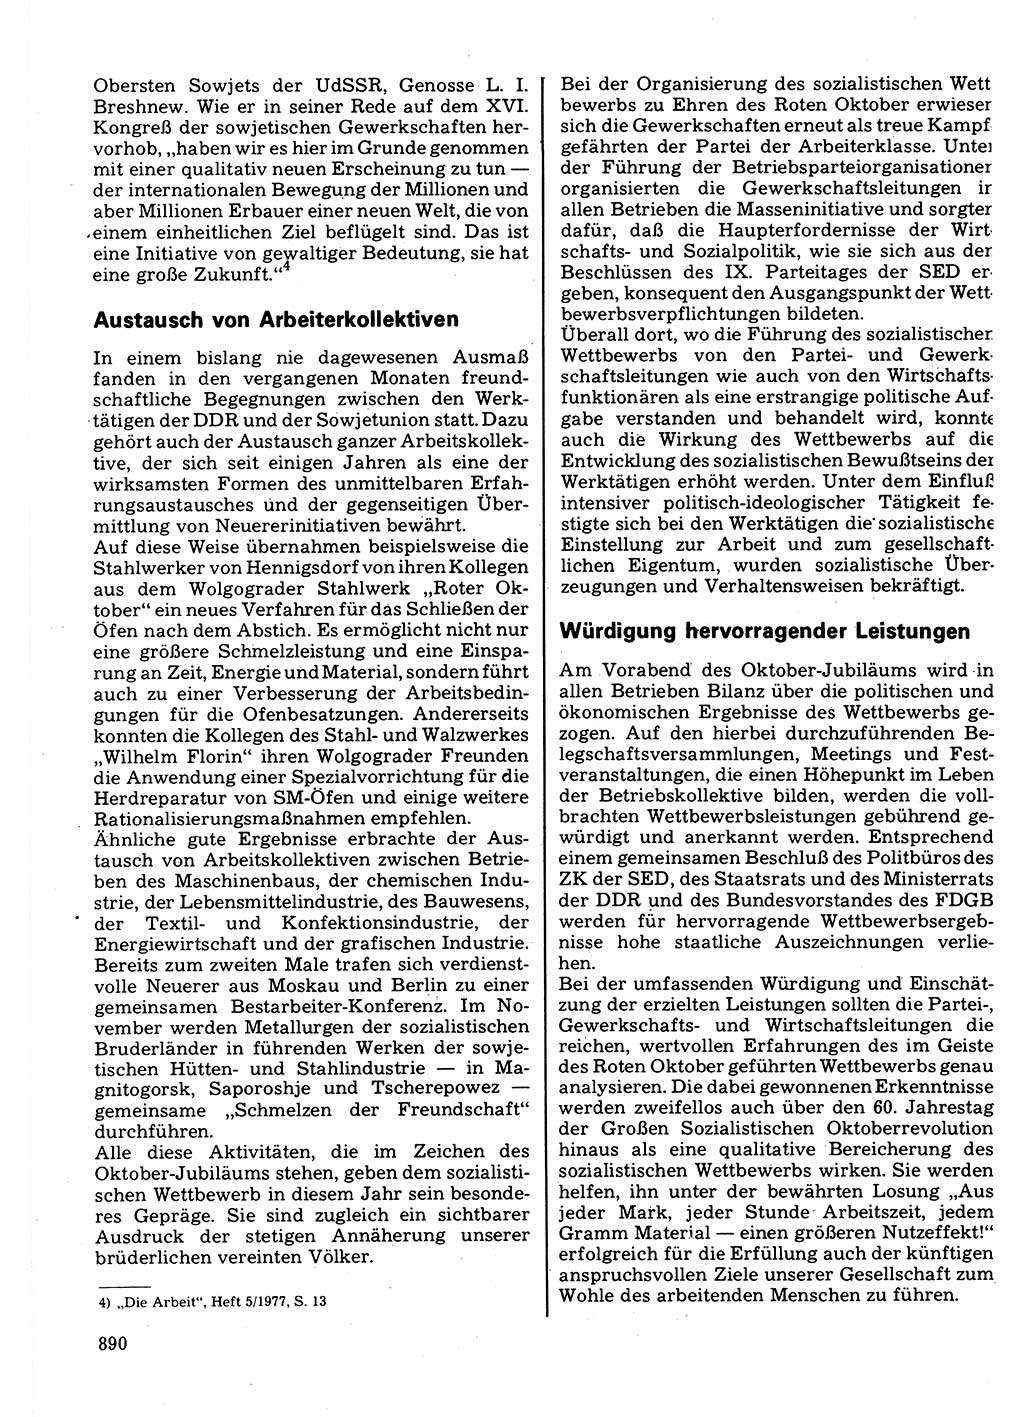 Neuer Weg (NW), Organ des Zentralkomitees (ZK) der SED (Sozialistische Einheitspartei Deutschlands) für Fragen des Parteilebens, 32. Jahrgang [Deutsche Demokratische Republik (DDR)] 1977, Seite 890 (NW ZK SED DDR 1977, S. 890)